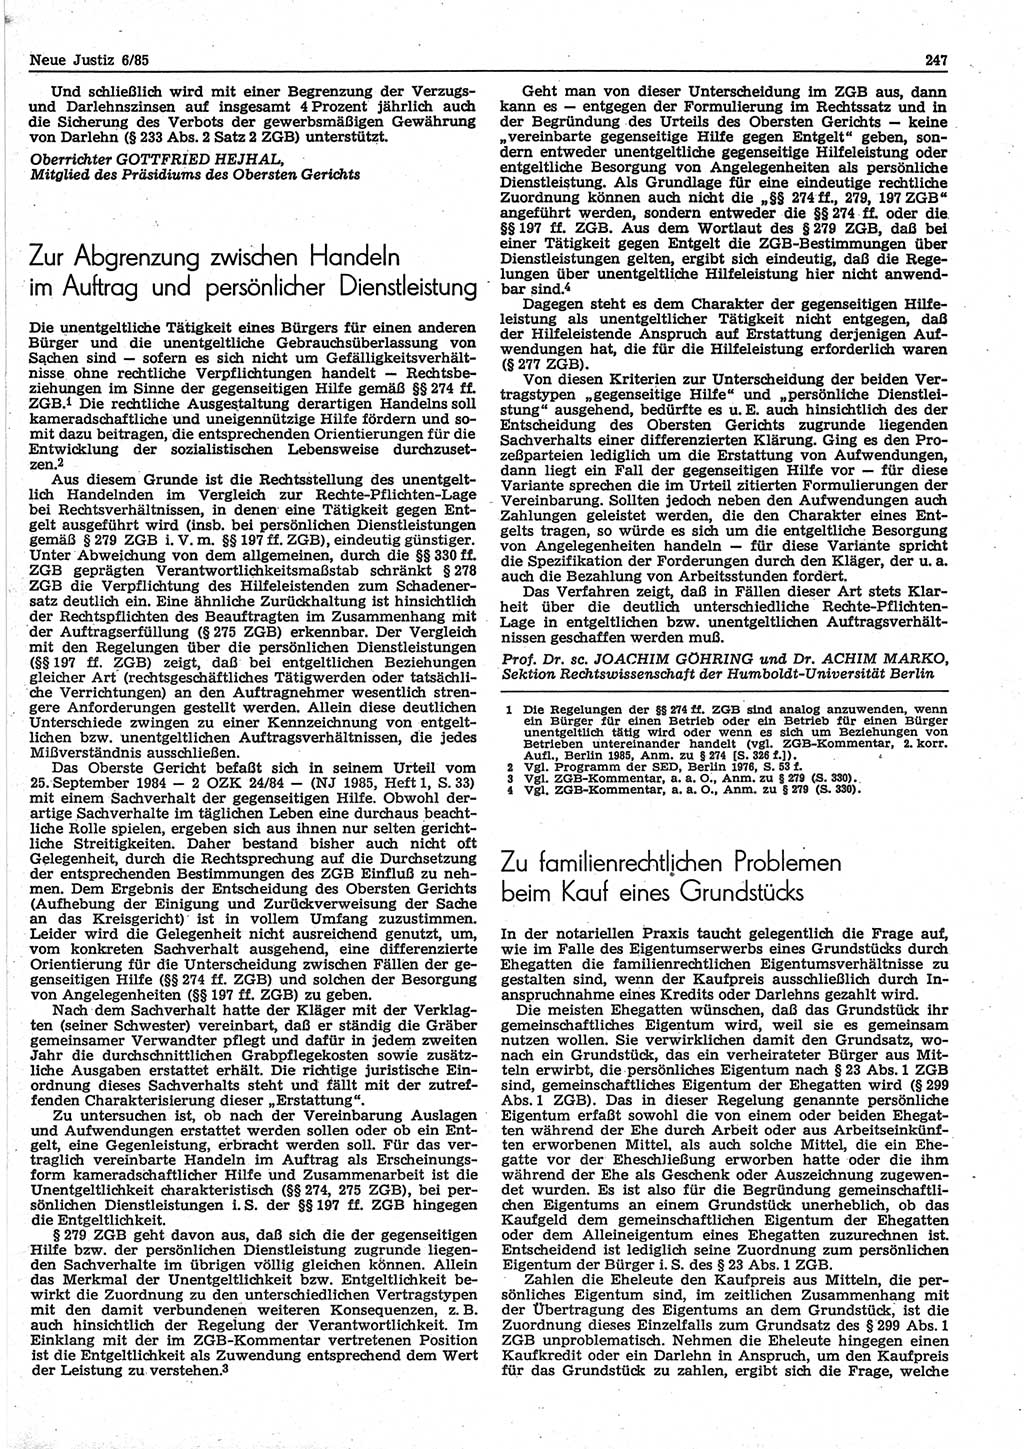 Neue Justiz (NJ), Zeitschrift für sozialistisches Recht und Gesetzlichkeit [Deutsche Demokratische Republik (DDR)], 39. Jahrgang 1985, Seite 247 (NJ DDR 1985, S. 247)